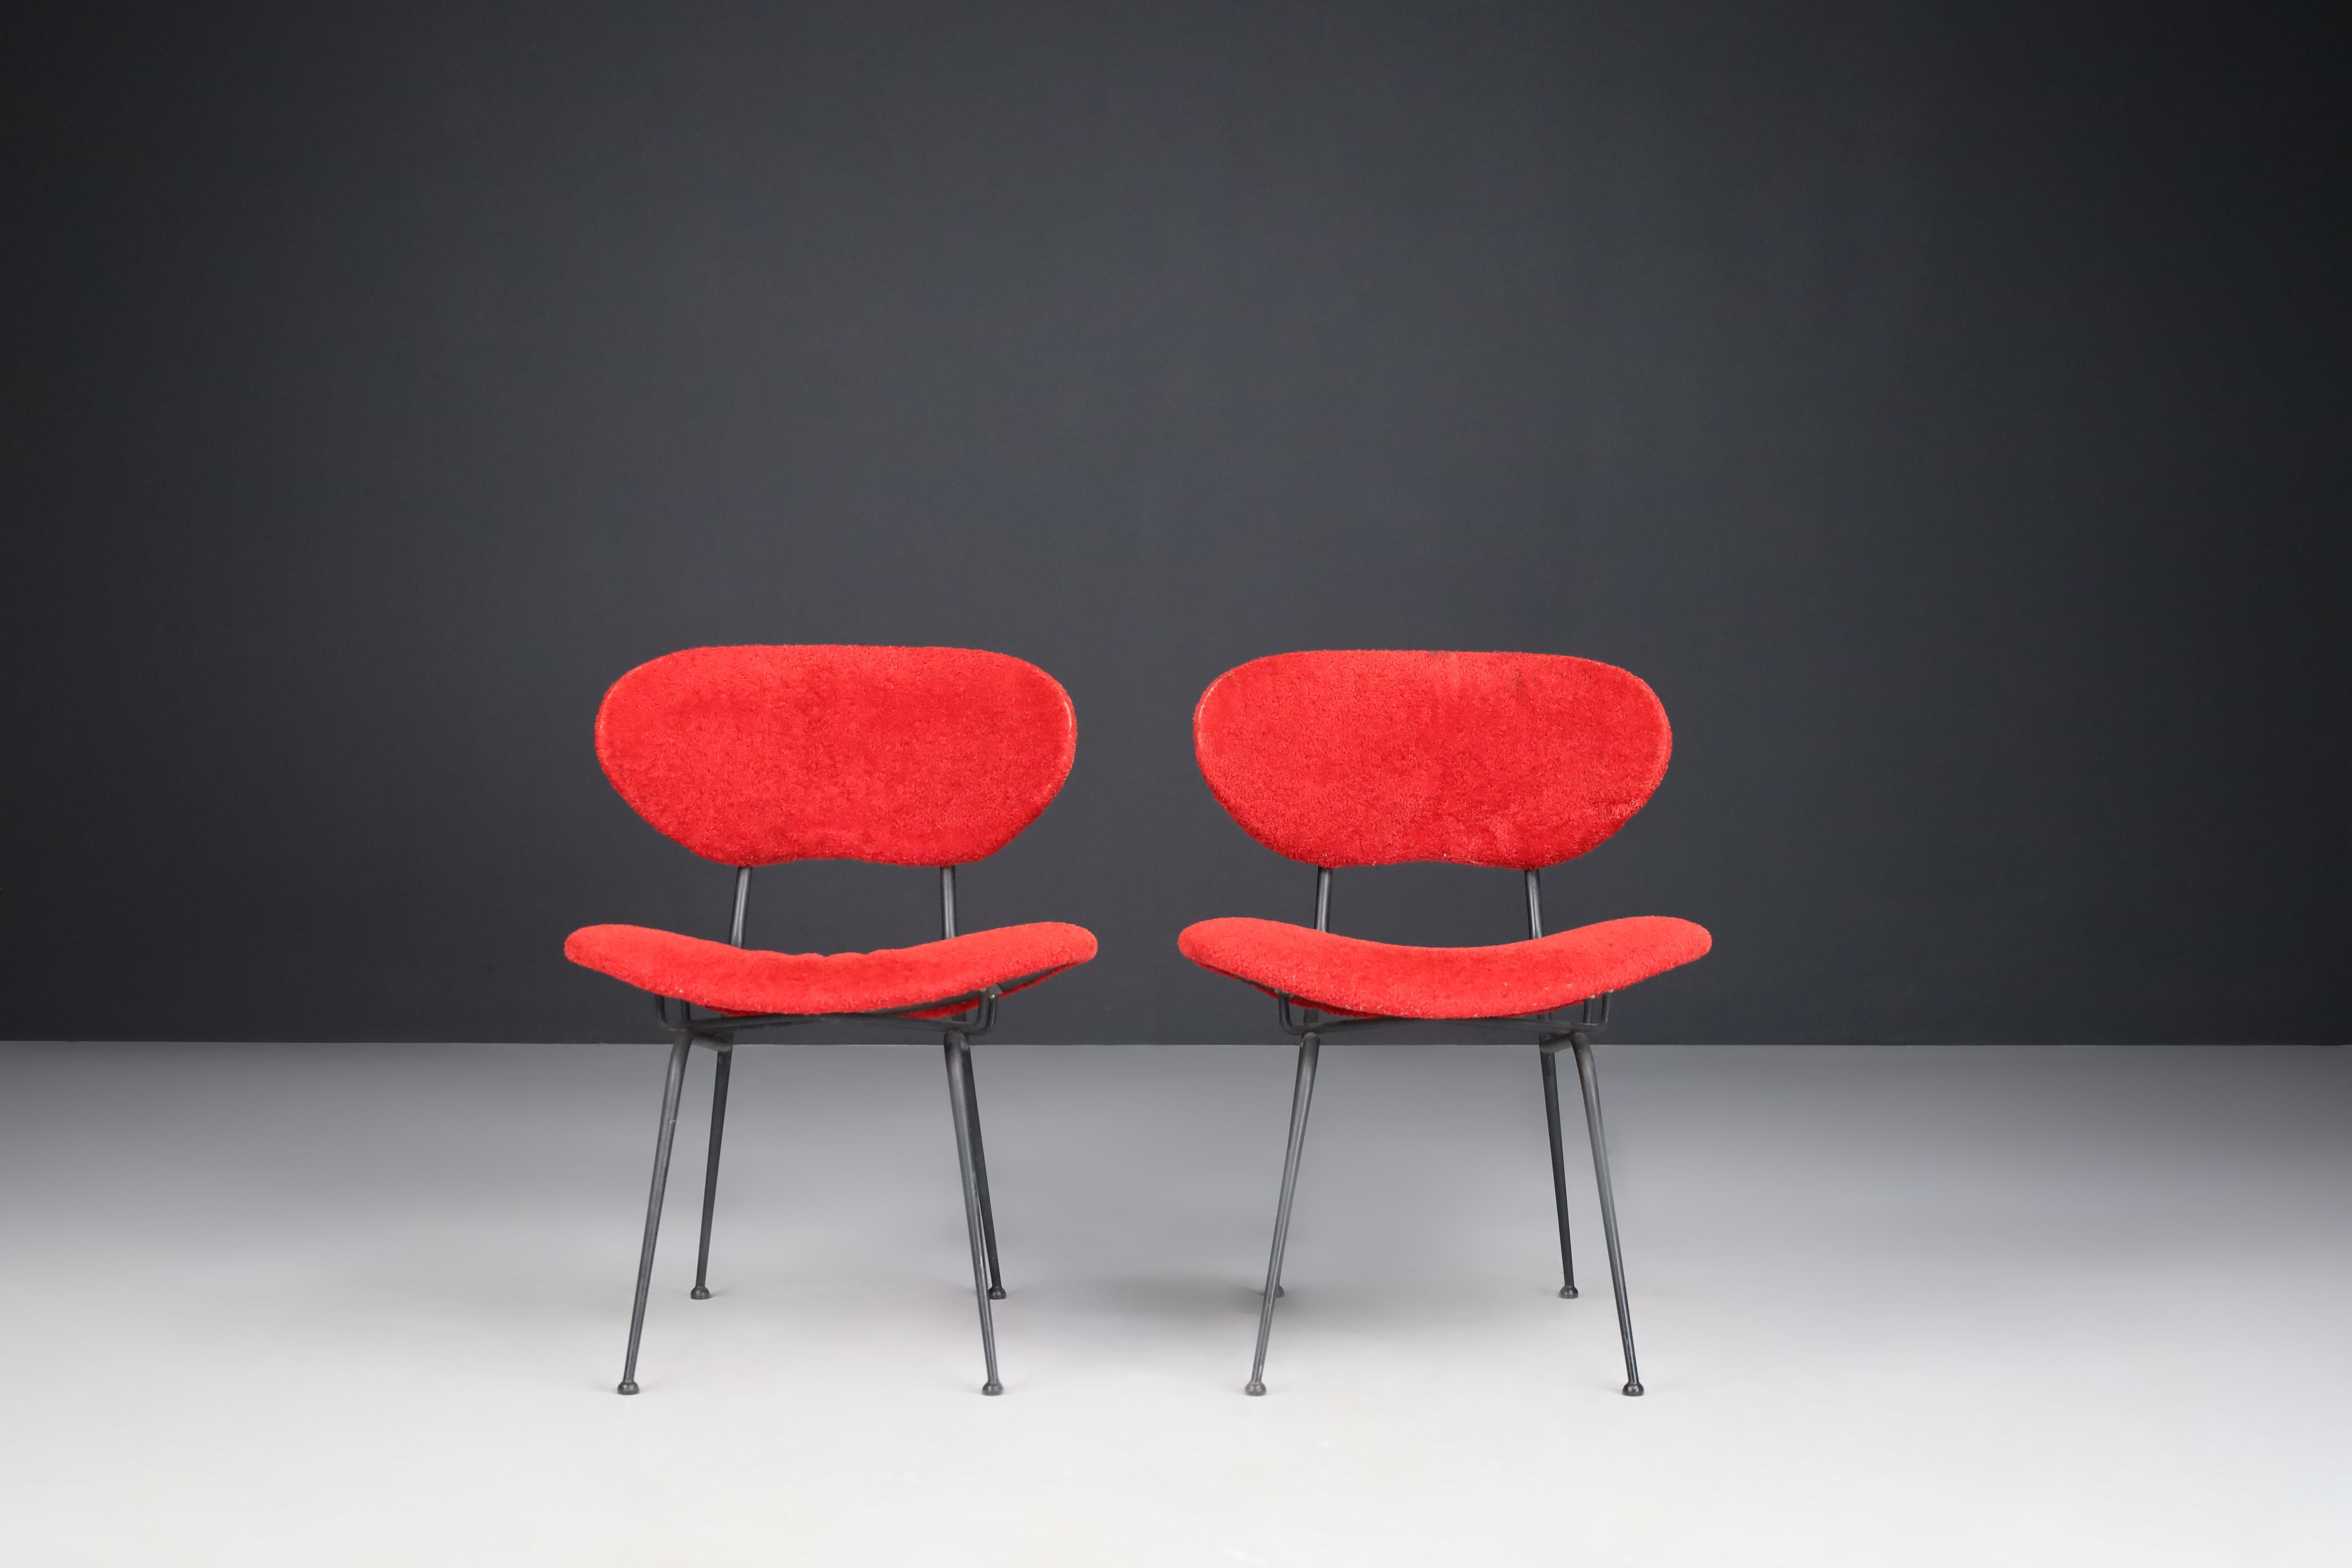 Rote Sessel der Jahrhundertmitte von Gastone Rinaldi, Italien 1960er Jahre.
 
Gastone Rinaldi entwarf dieses schöne und ikonische Paar seltener Stühle im Jahr 1954 in Italien. Die Form der Stühle ist skulptural, einzigartig und elegant. Die Beine